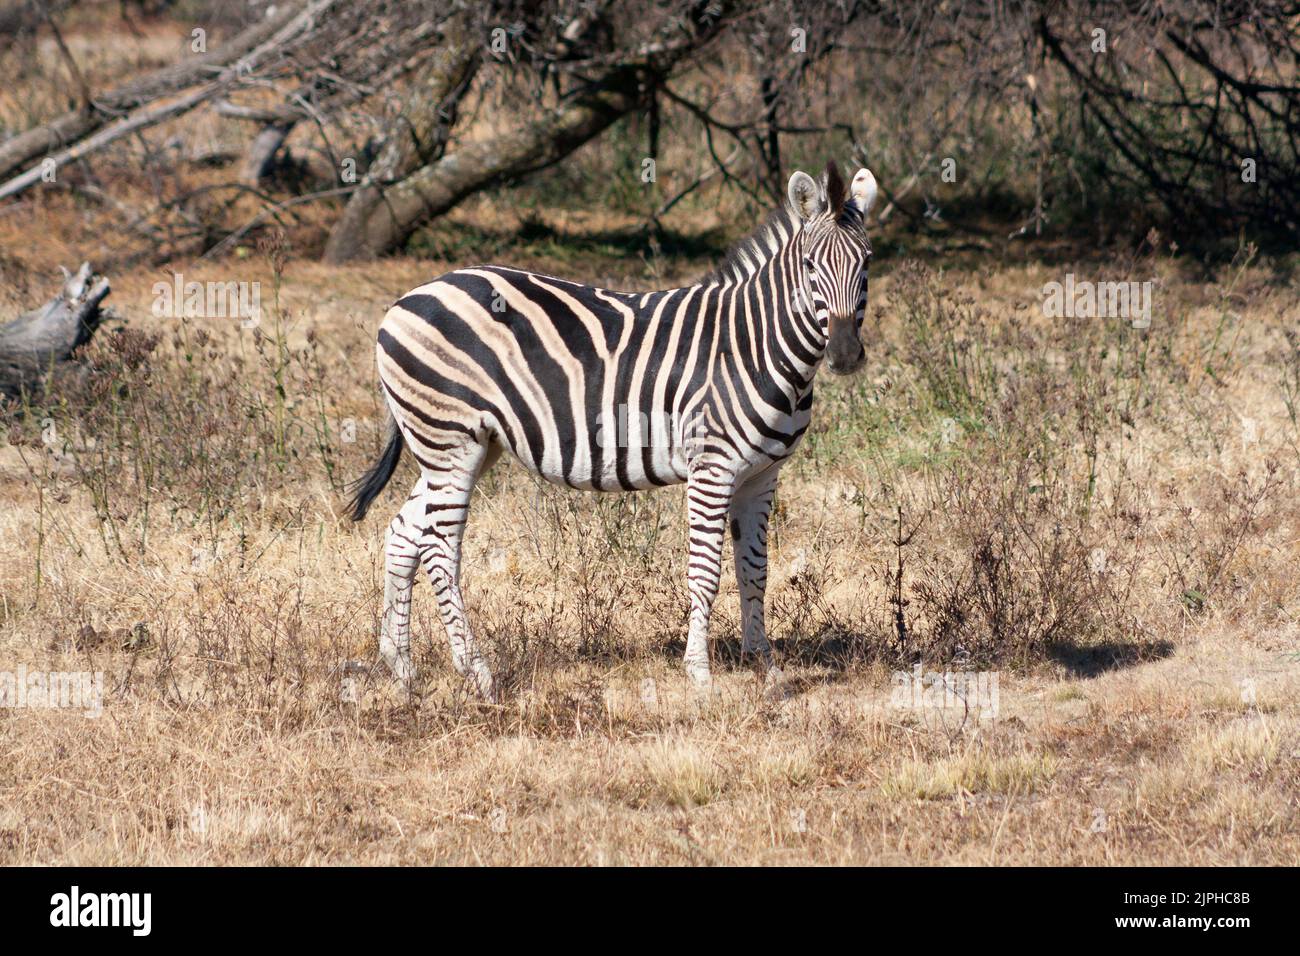 A beautiful zebra in a field in safari Stock Photo